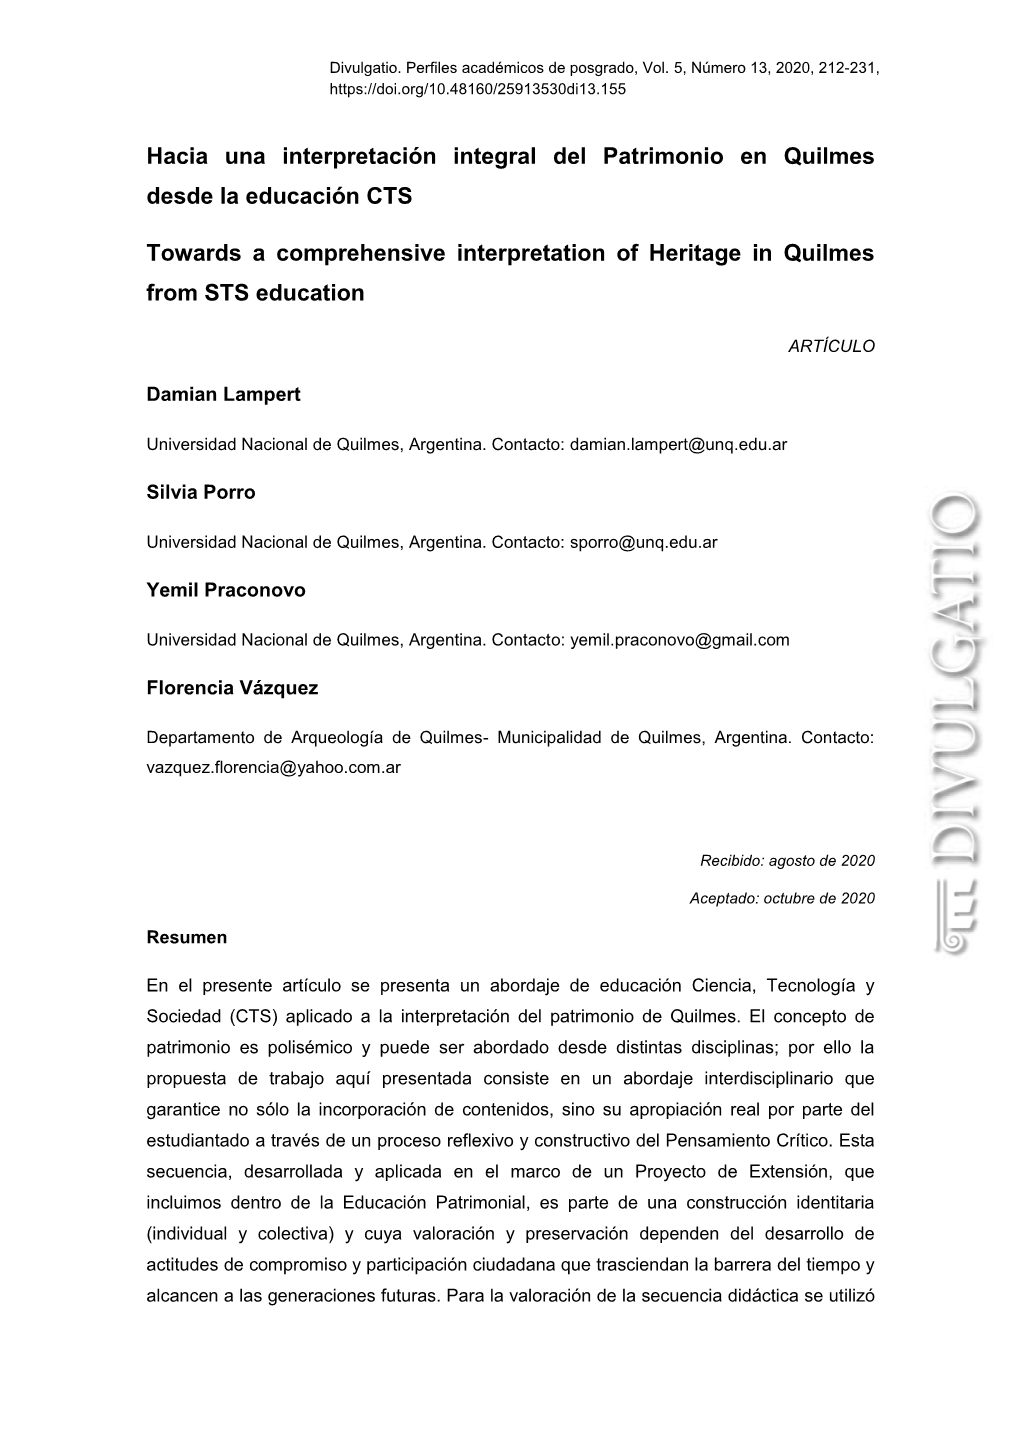 Hacia Una Interpretación Integral Del Patrimonio En Quilmes Desde La Educación CTS